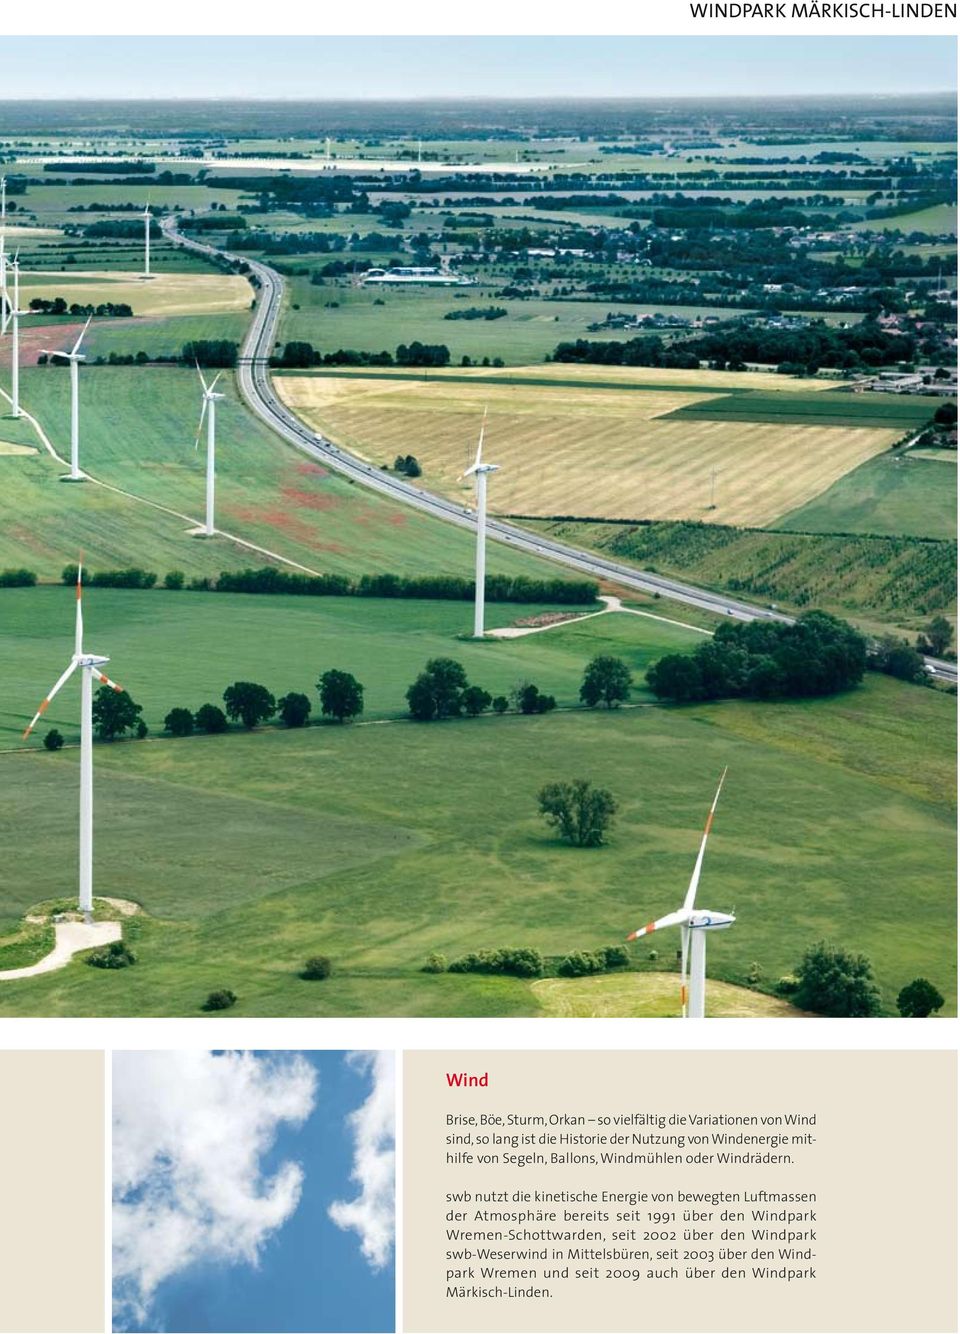 swb nutzt die kinetische Energie von bewegten Luftmassen der Atmosphäre bereits seit 1991 über den Windpark